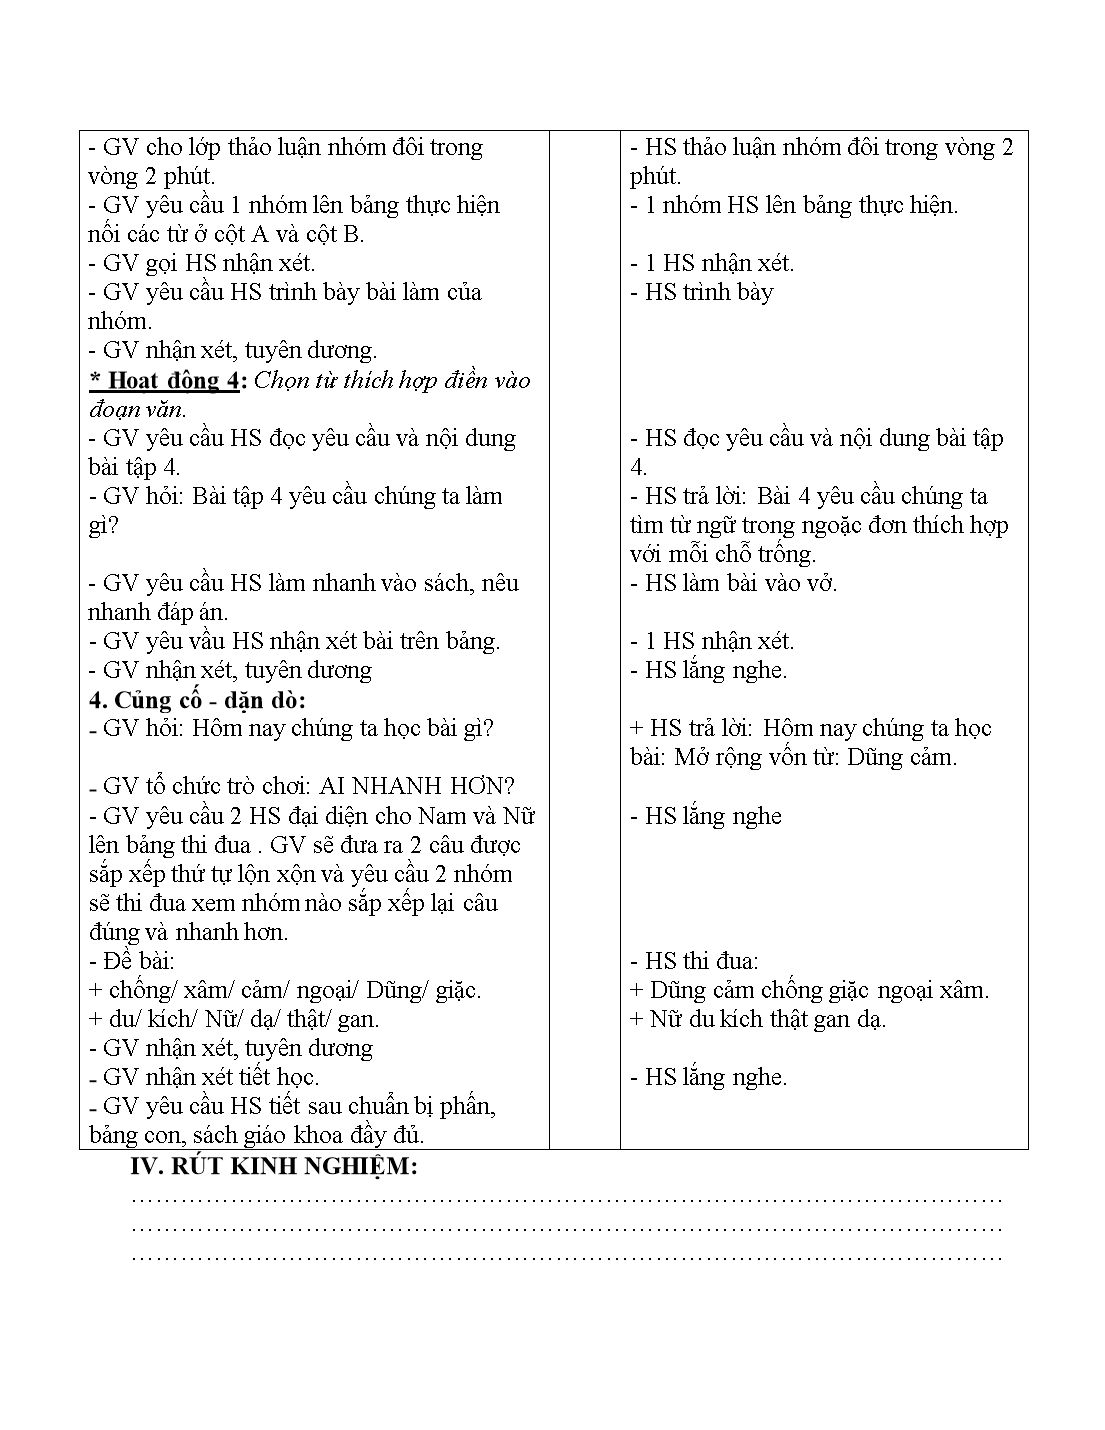 Giáo án môn Tiếng Việt Lớp 4 - Luyện từ và câu: Mở rộng vốn từ: Dũng cảm trang 4